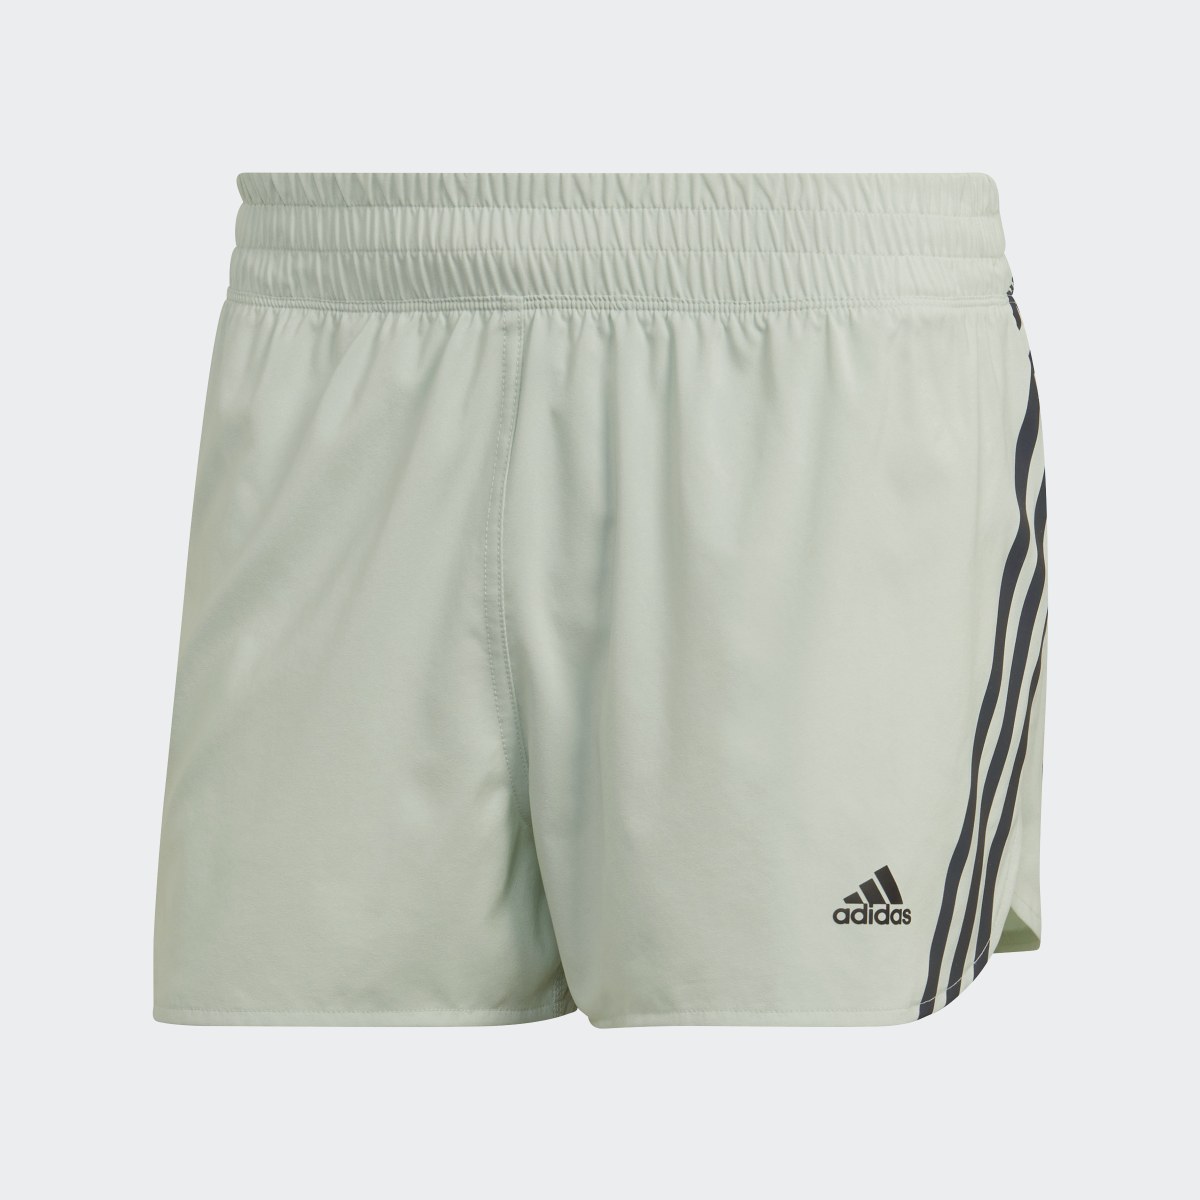 Adidas Run Icons 3-Streifen Running Shorts. 4